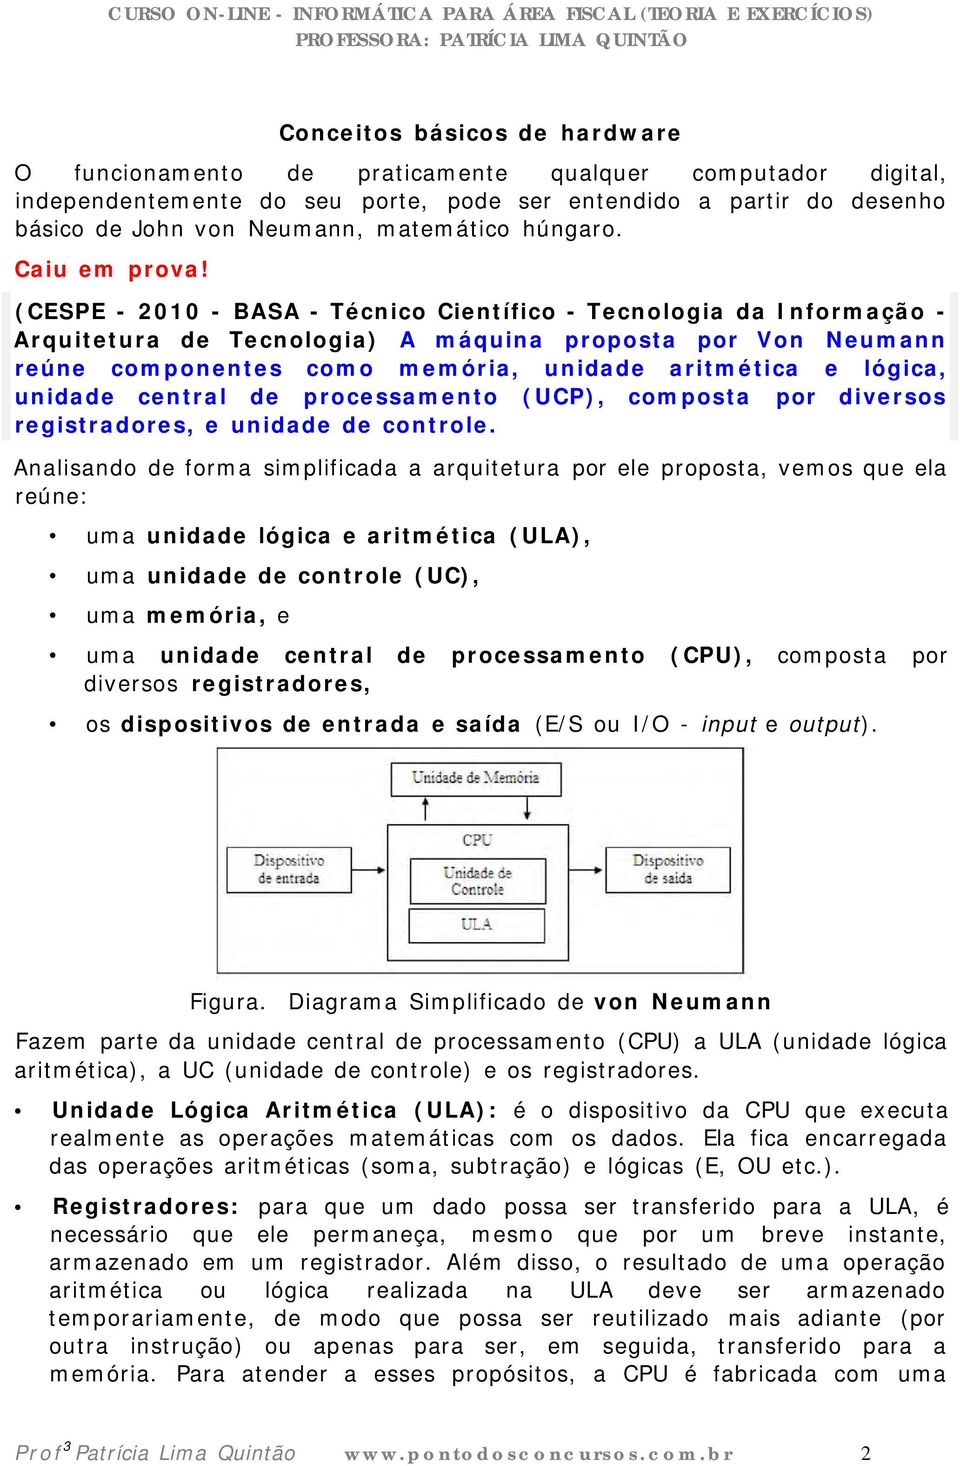 (CESPE - 2010 - BASA - Técnico Científico - Tecnologia da Informação - Arquitetura de Tecnologia) A máquina proposta por Von Neumann reúne componentes como memória, unidade aritmética e lógica,